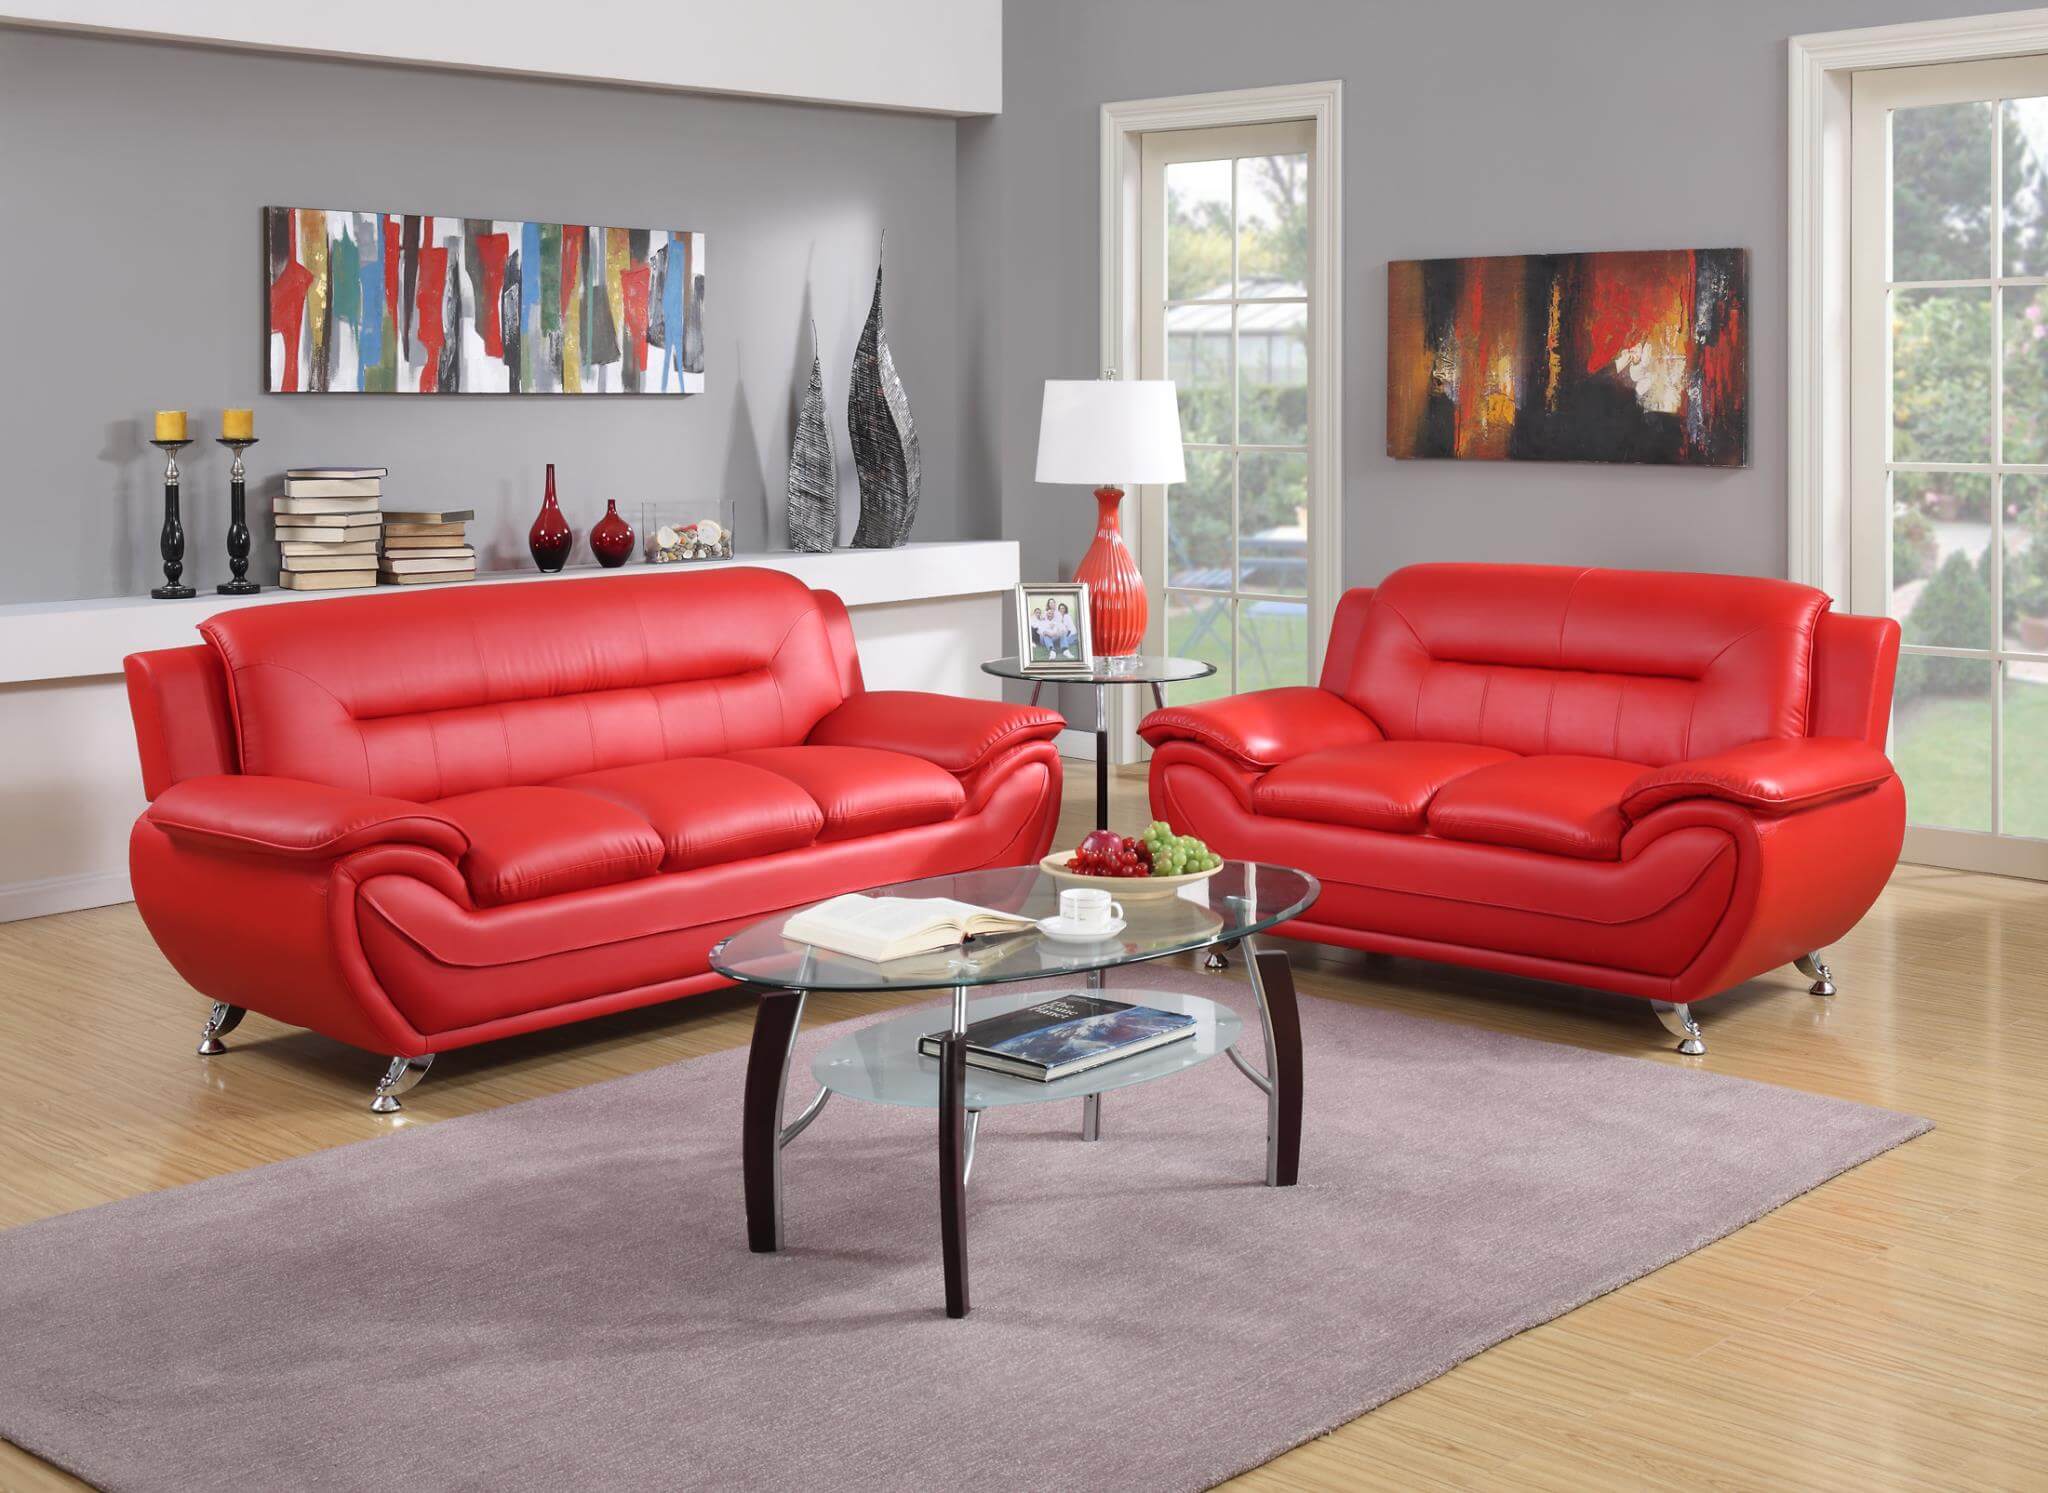 Red Contemporary Living Room Set, Contemporary Living Room Set